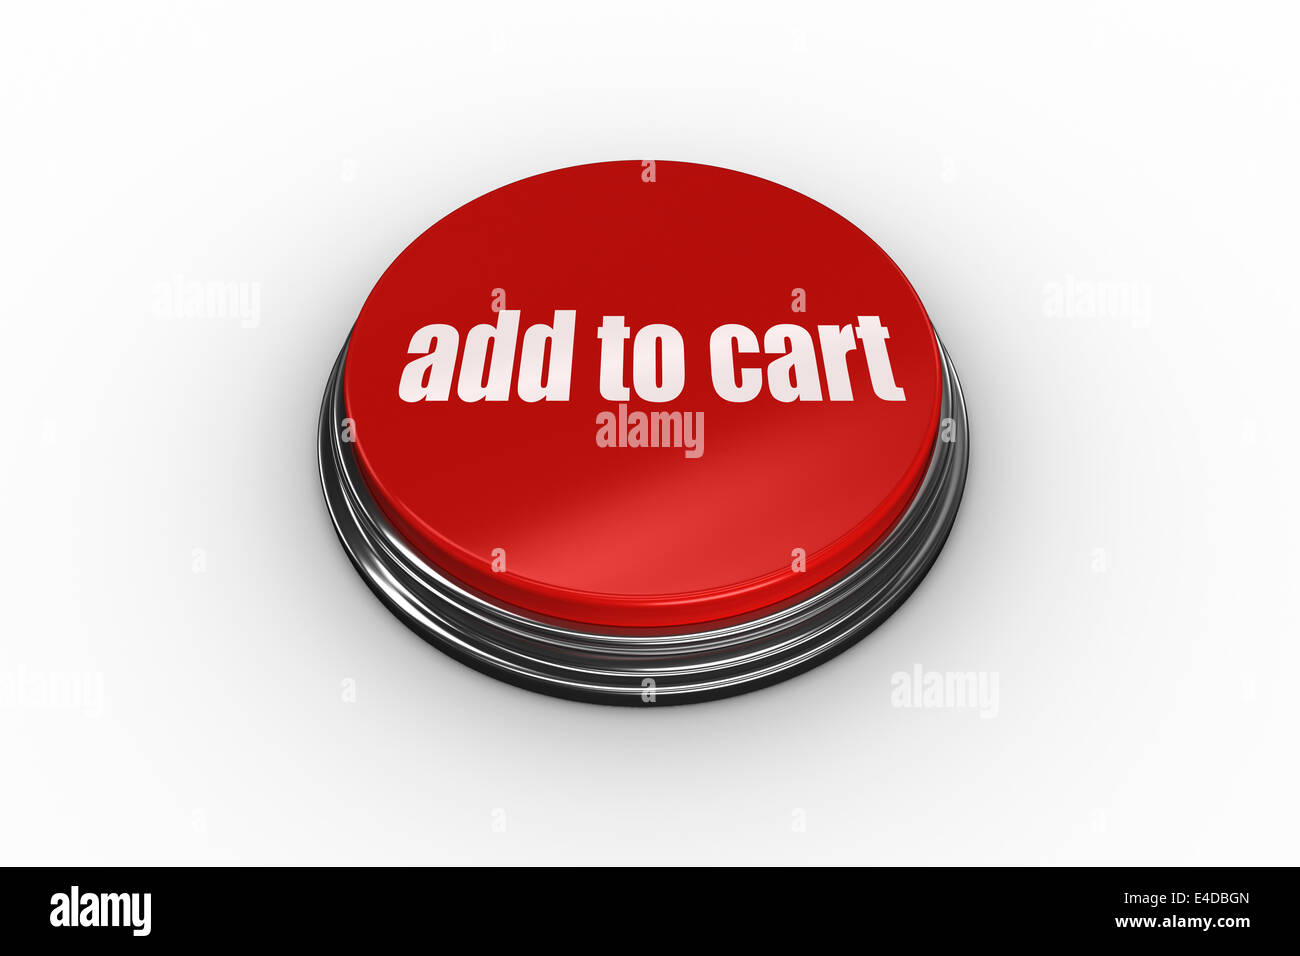 Add to cart auf Digital erzeugte roten Druckknopf Stockfoto